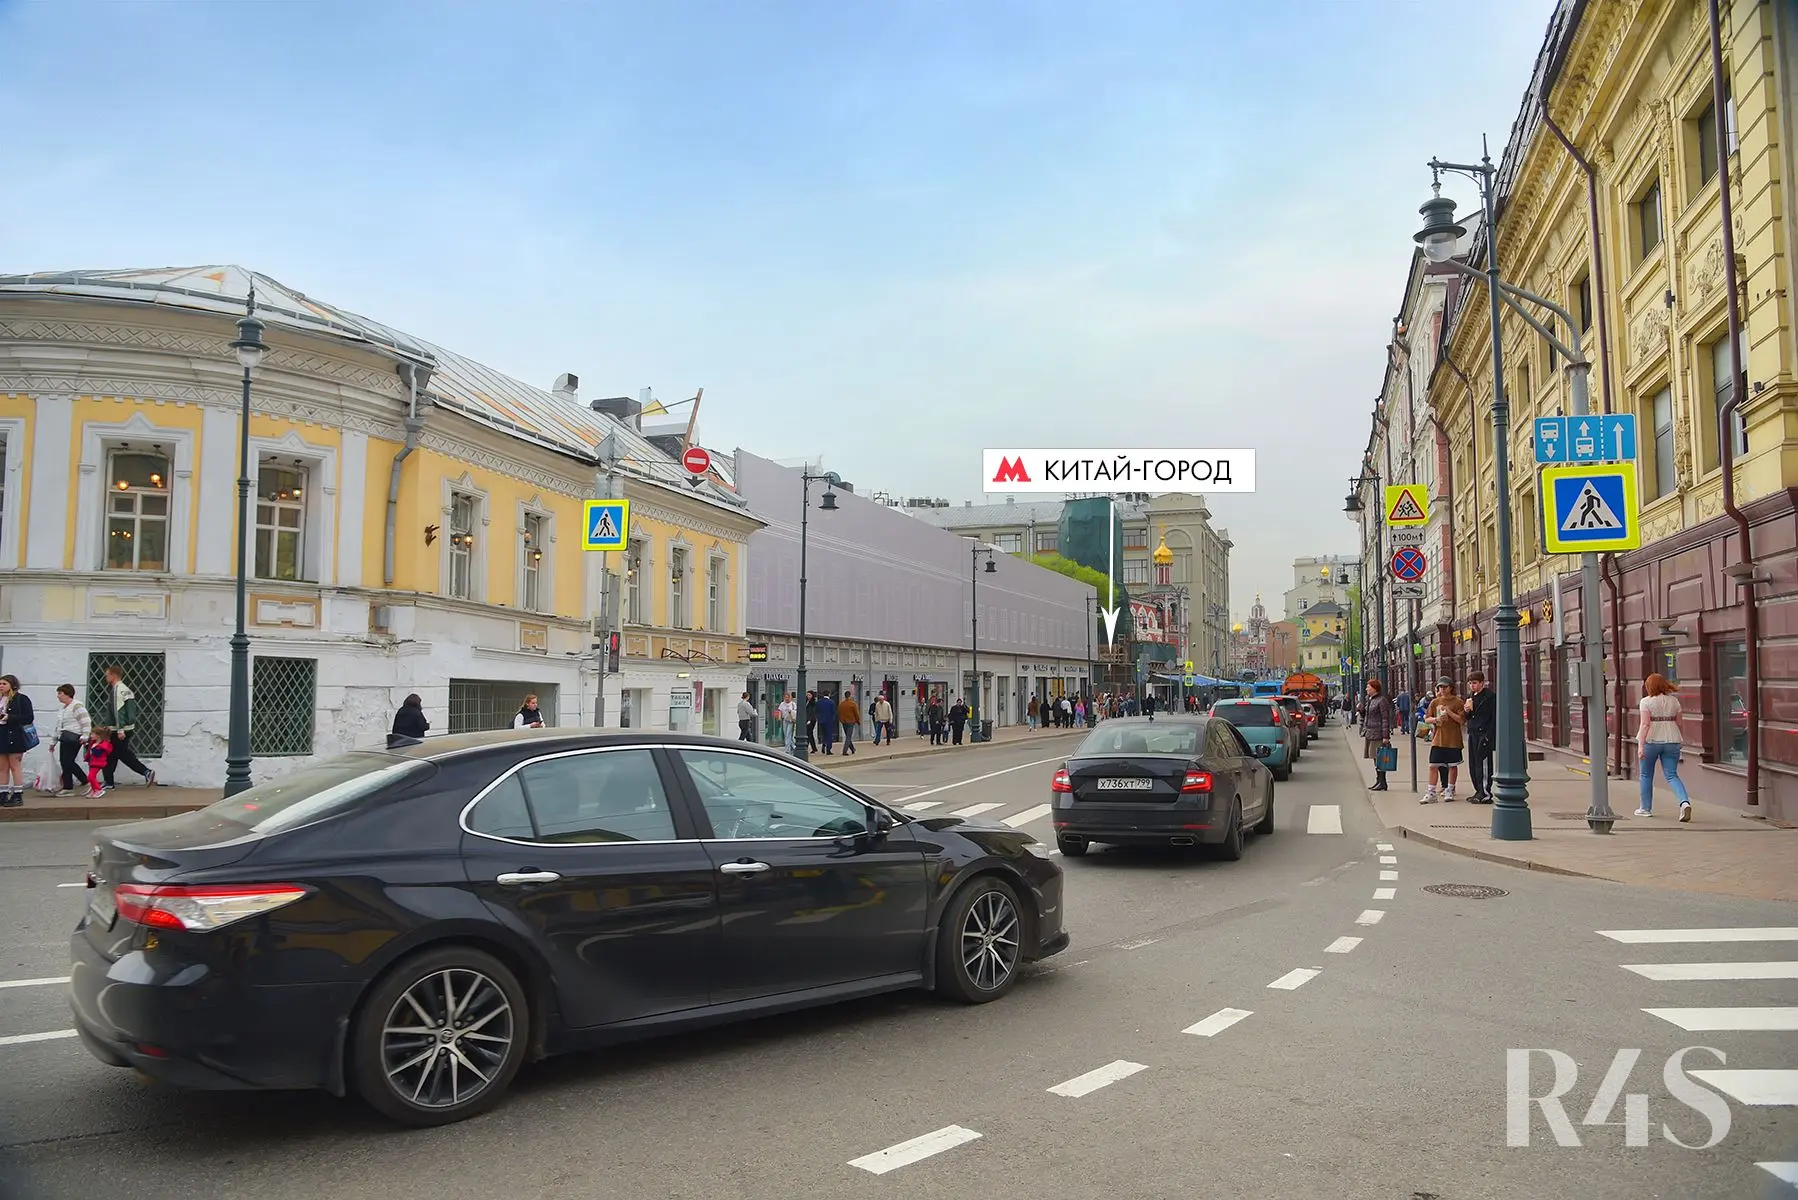 Аренда торговых помещений площадью 14.1 - 248.5 м2 в Москве:  Солянка, 2/6 R4S | Realty4Sale